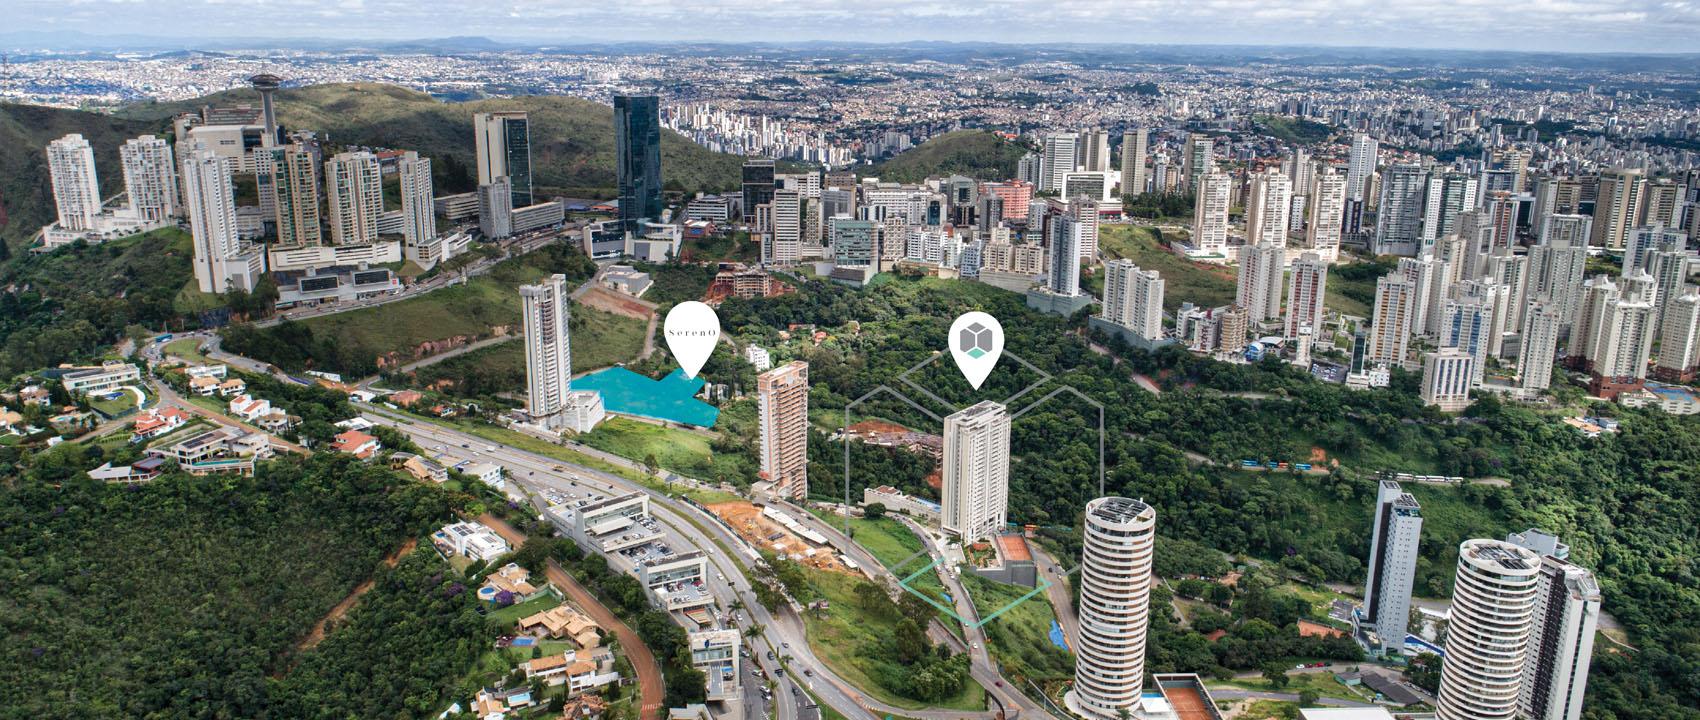 Descubra o Sereno, um investimento imobiliário de alto padrão e sustentável